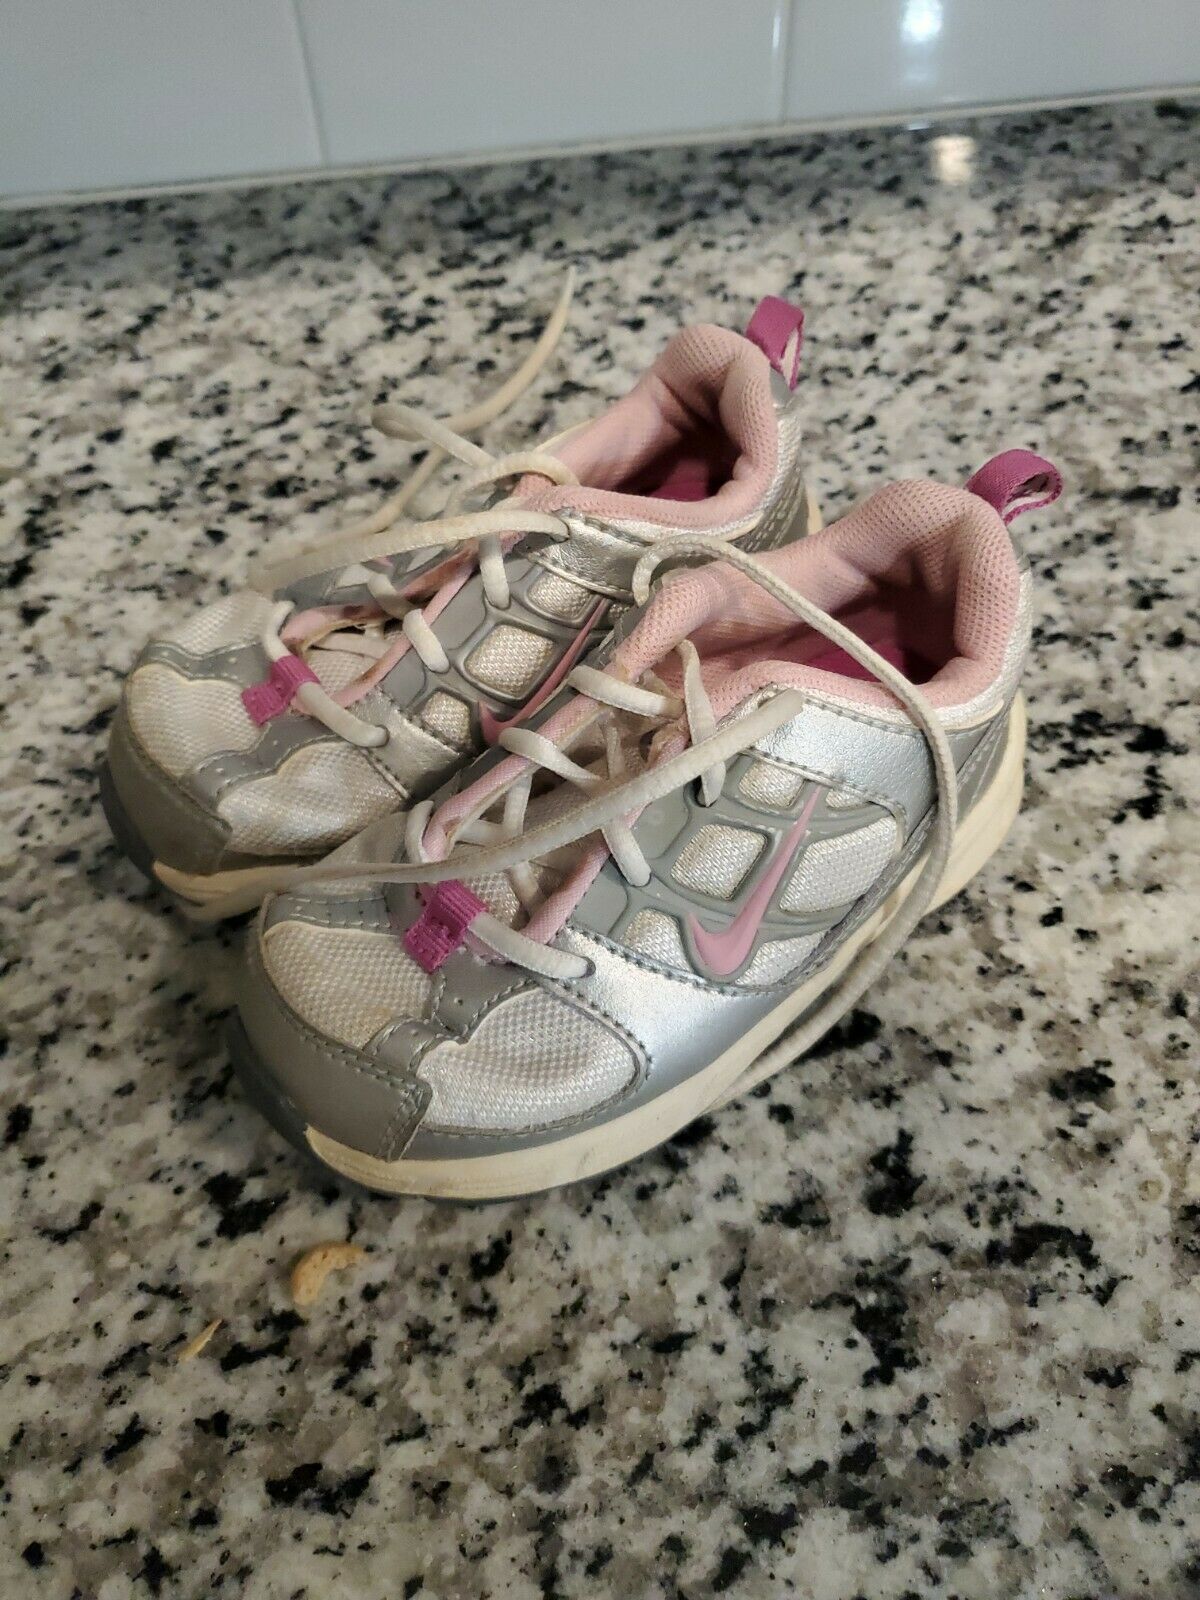 nike shoes toddler girls size 7C